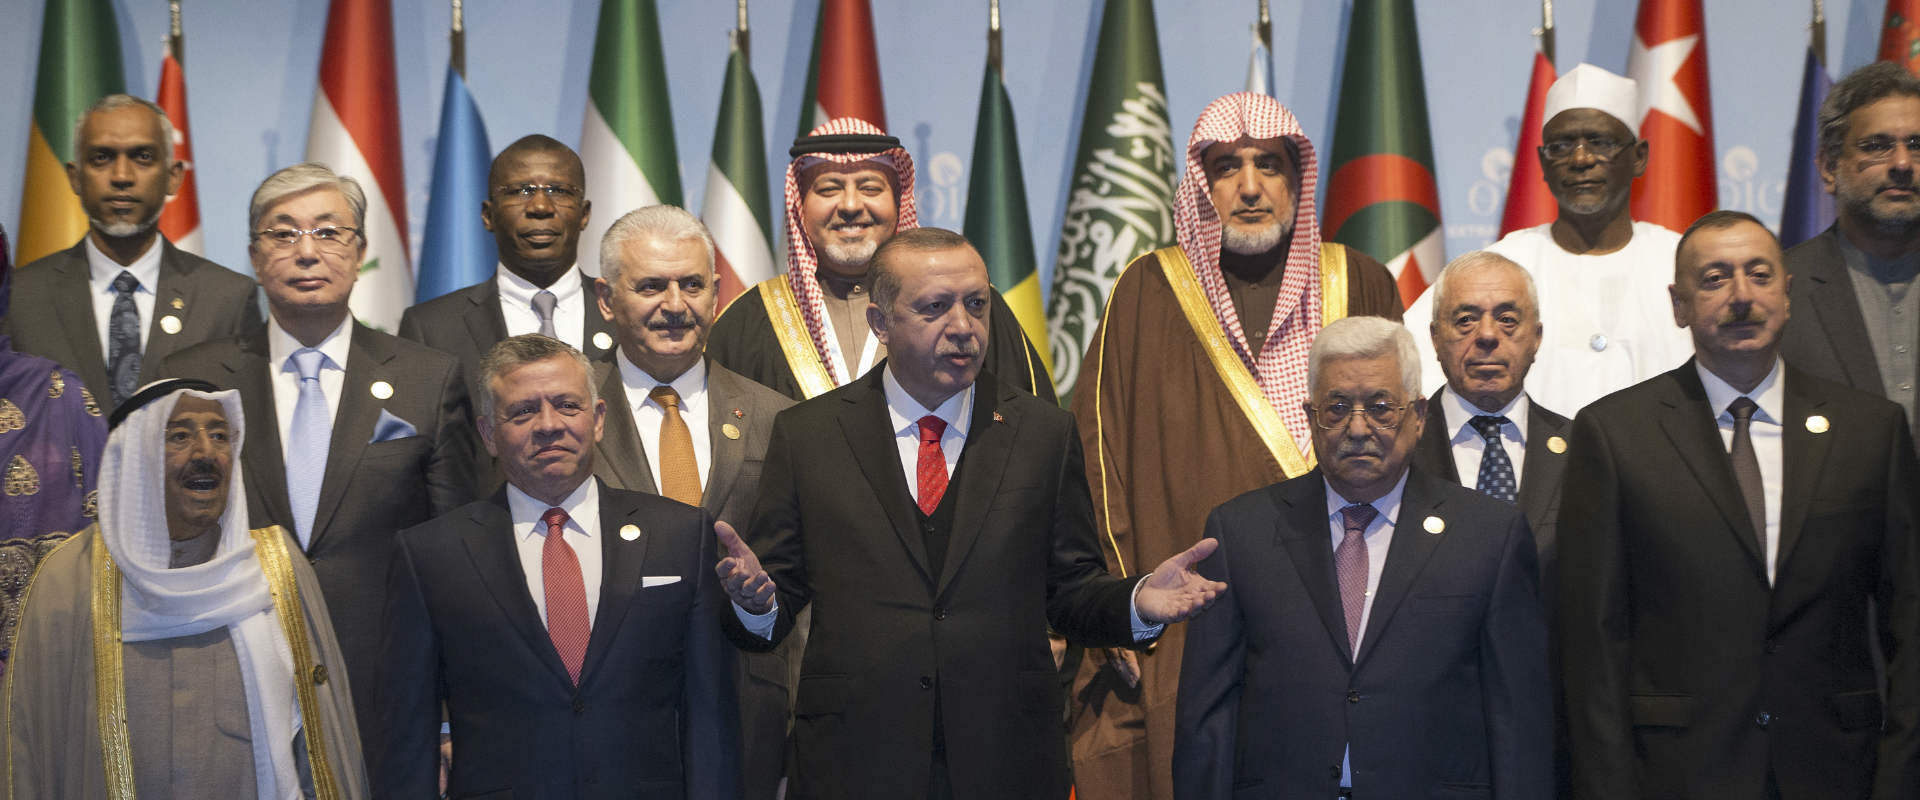 מנהיגי המדינות בכנס בטורקיה, היום